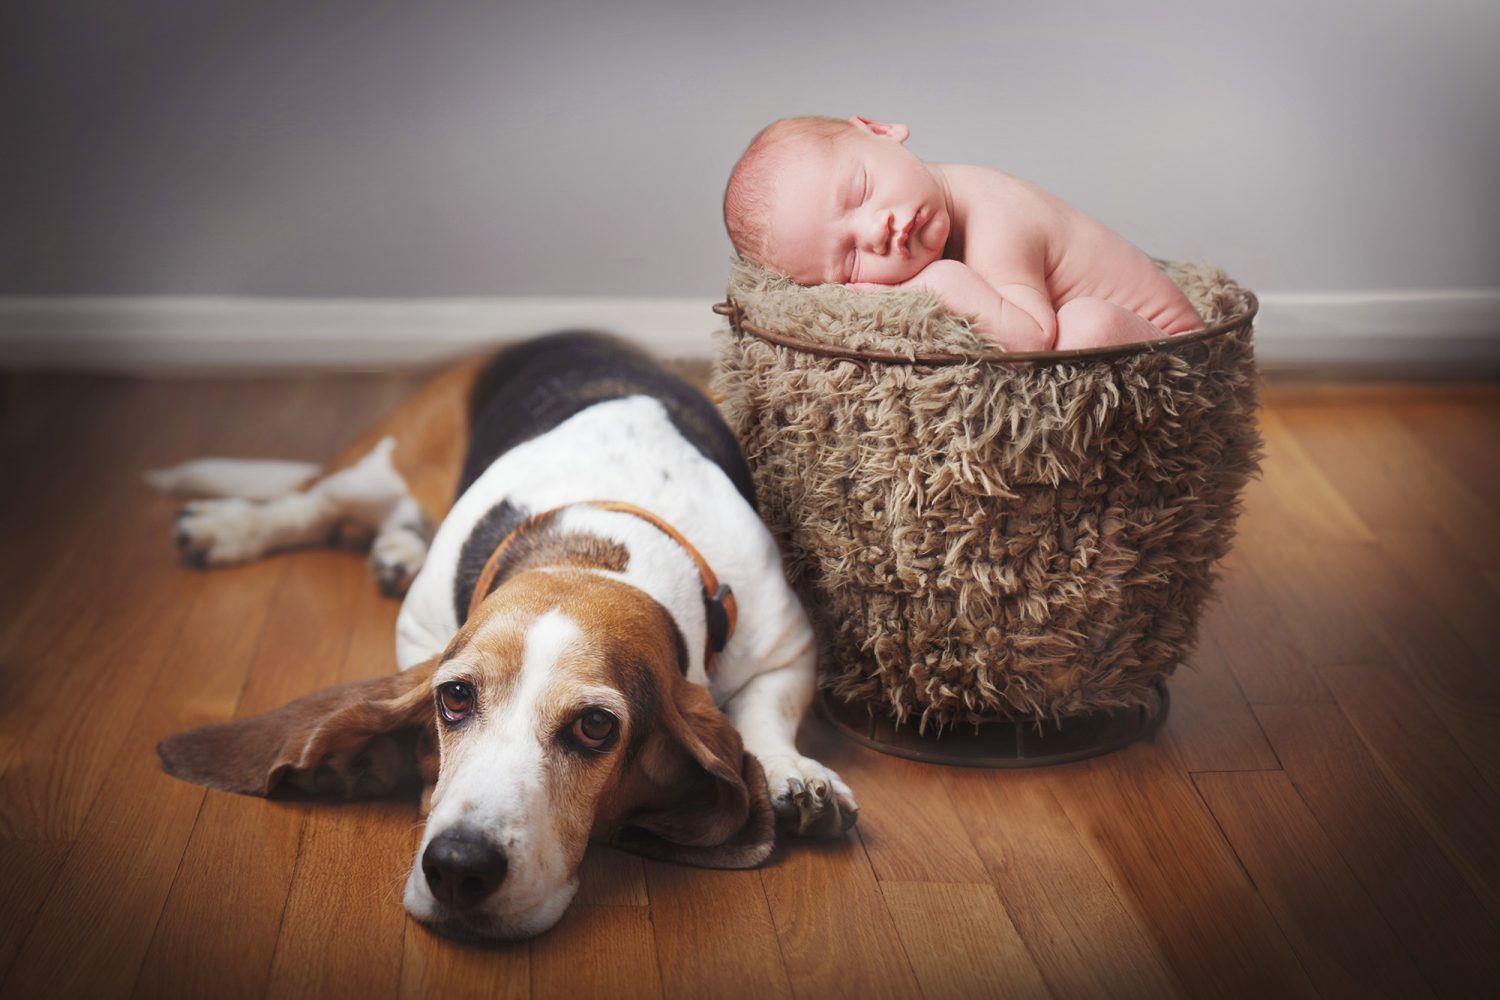 newborn in basket with dog